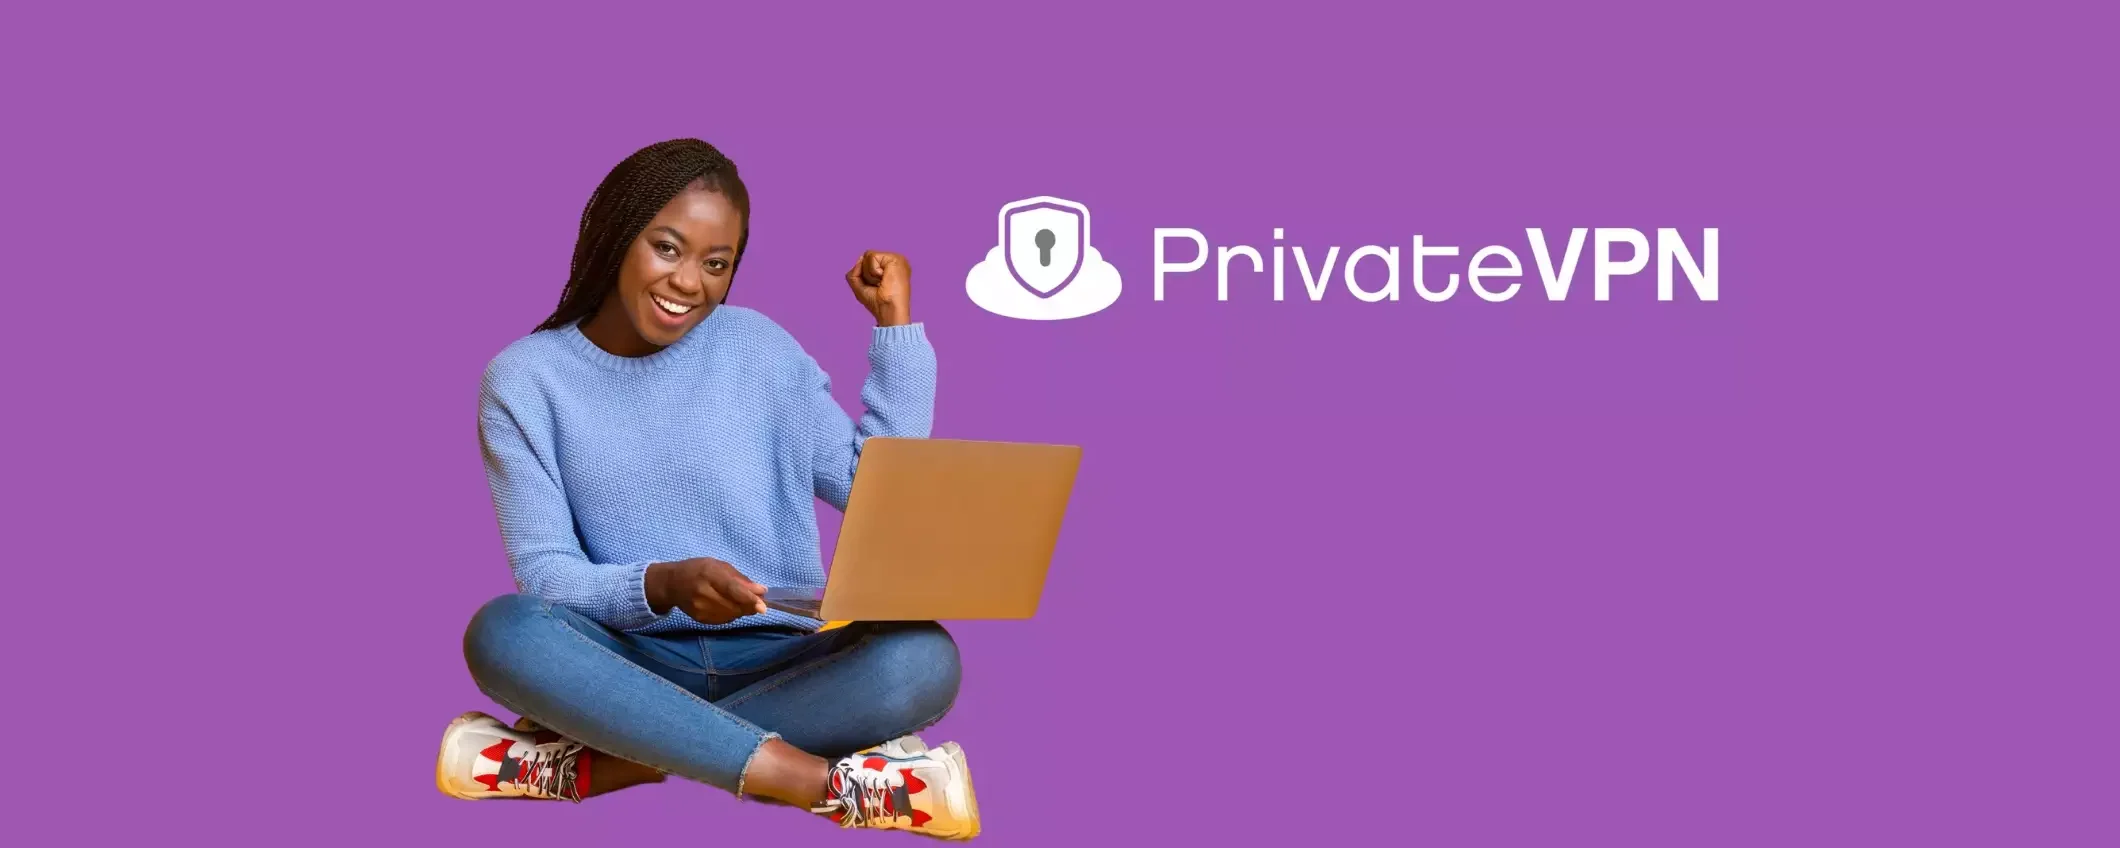 PrivateVPN: la soluzione perfetta per la sicurezza e la privacy online a soli 2€ al mese